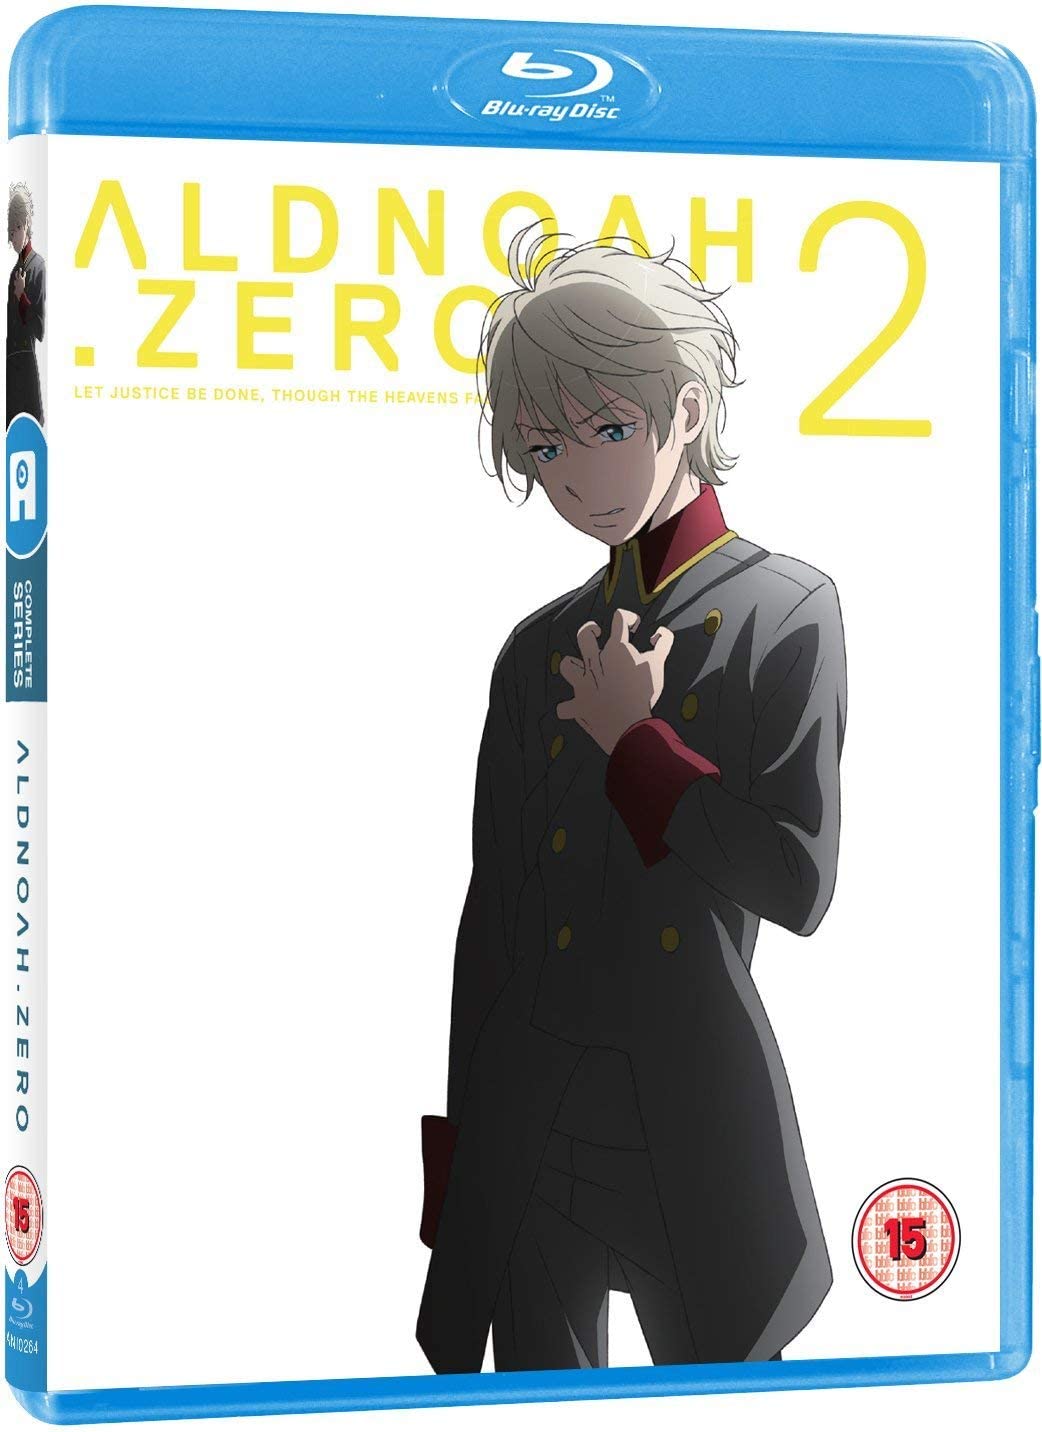 Aldnoah Zero Part 2 - Standard [Blu-ray]